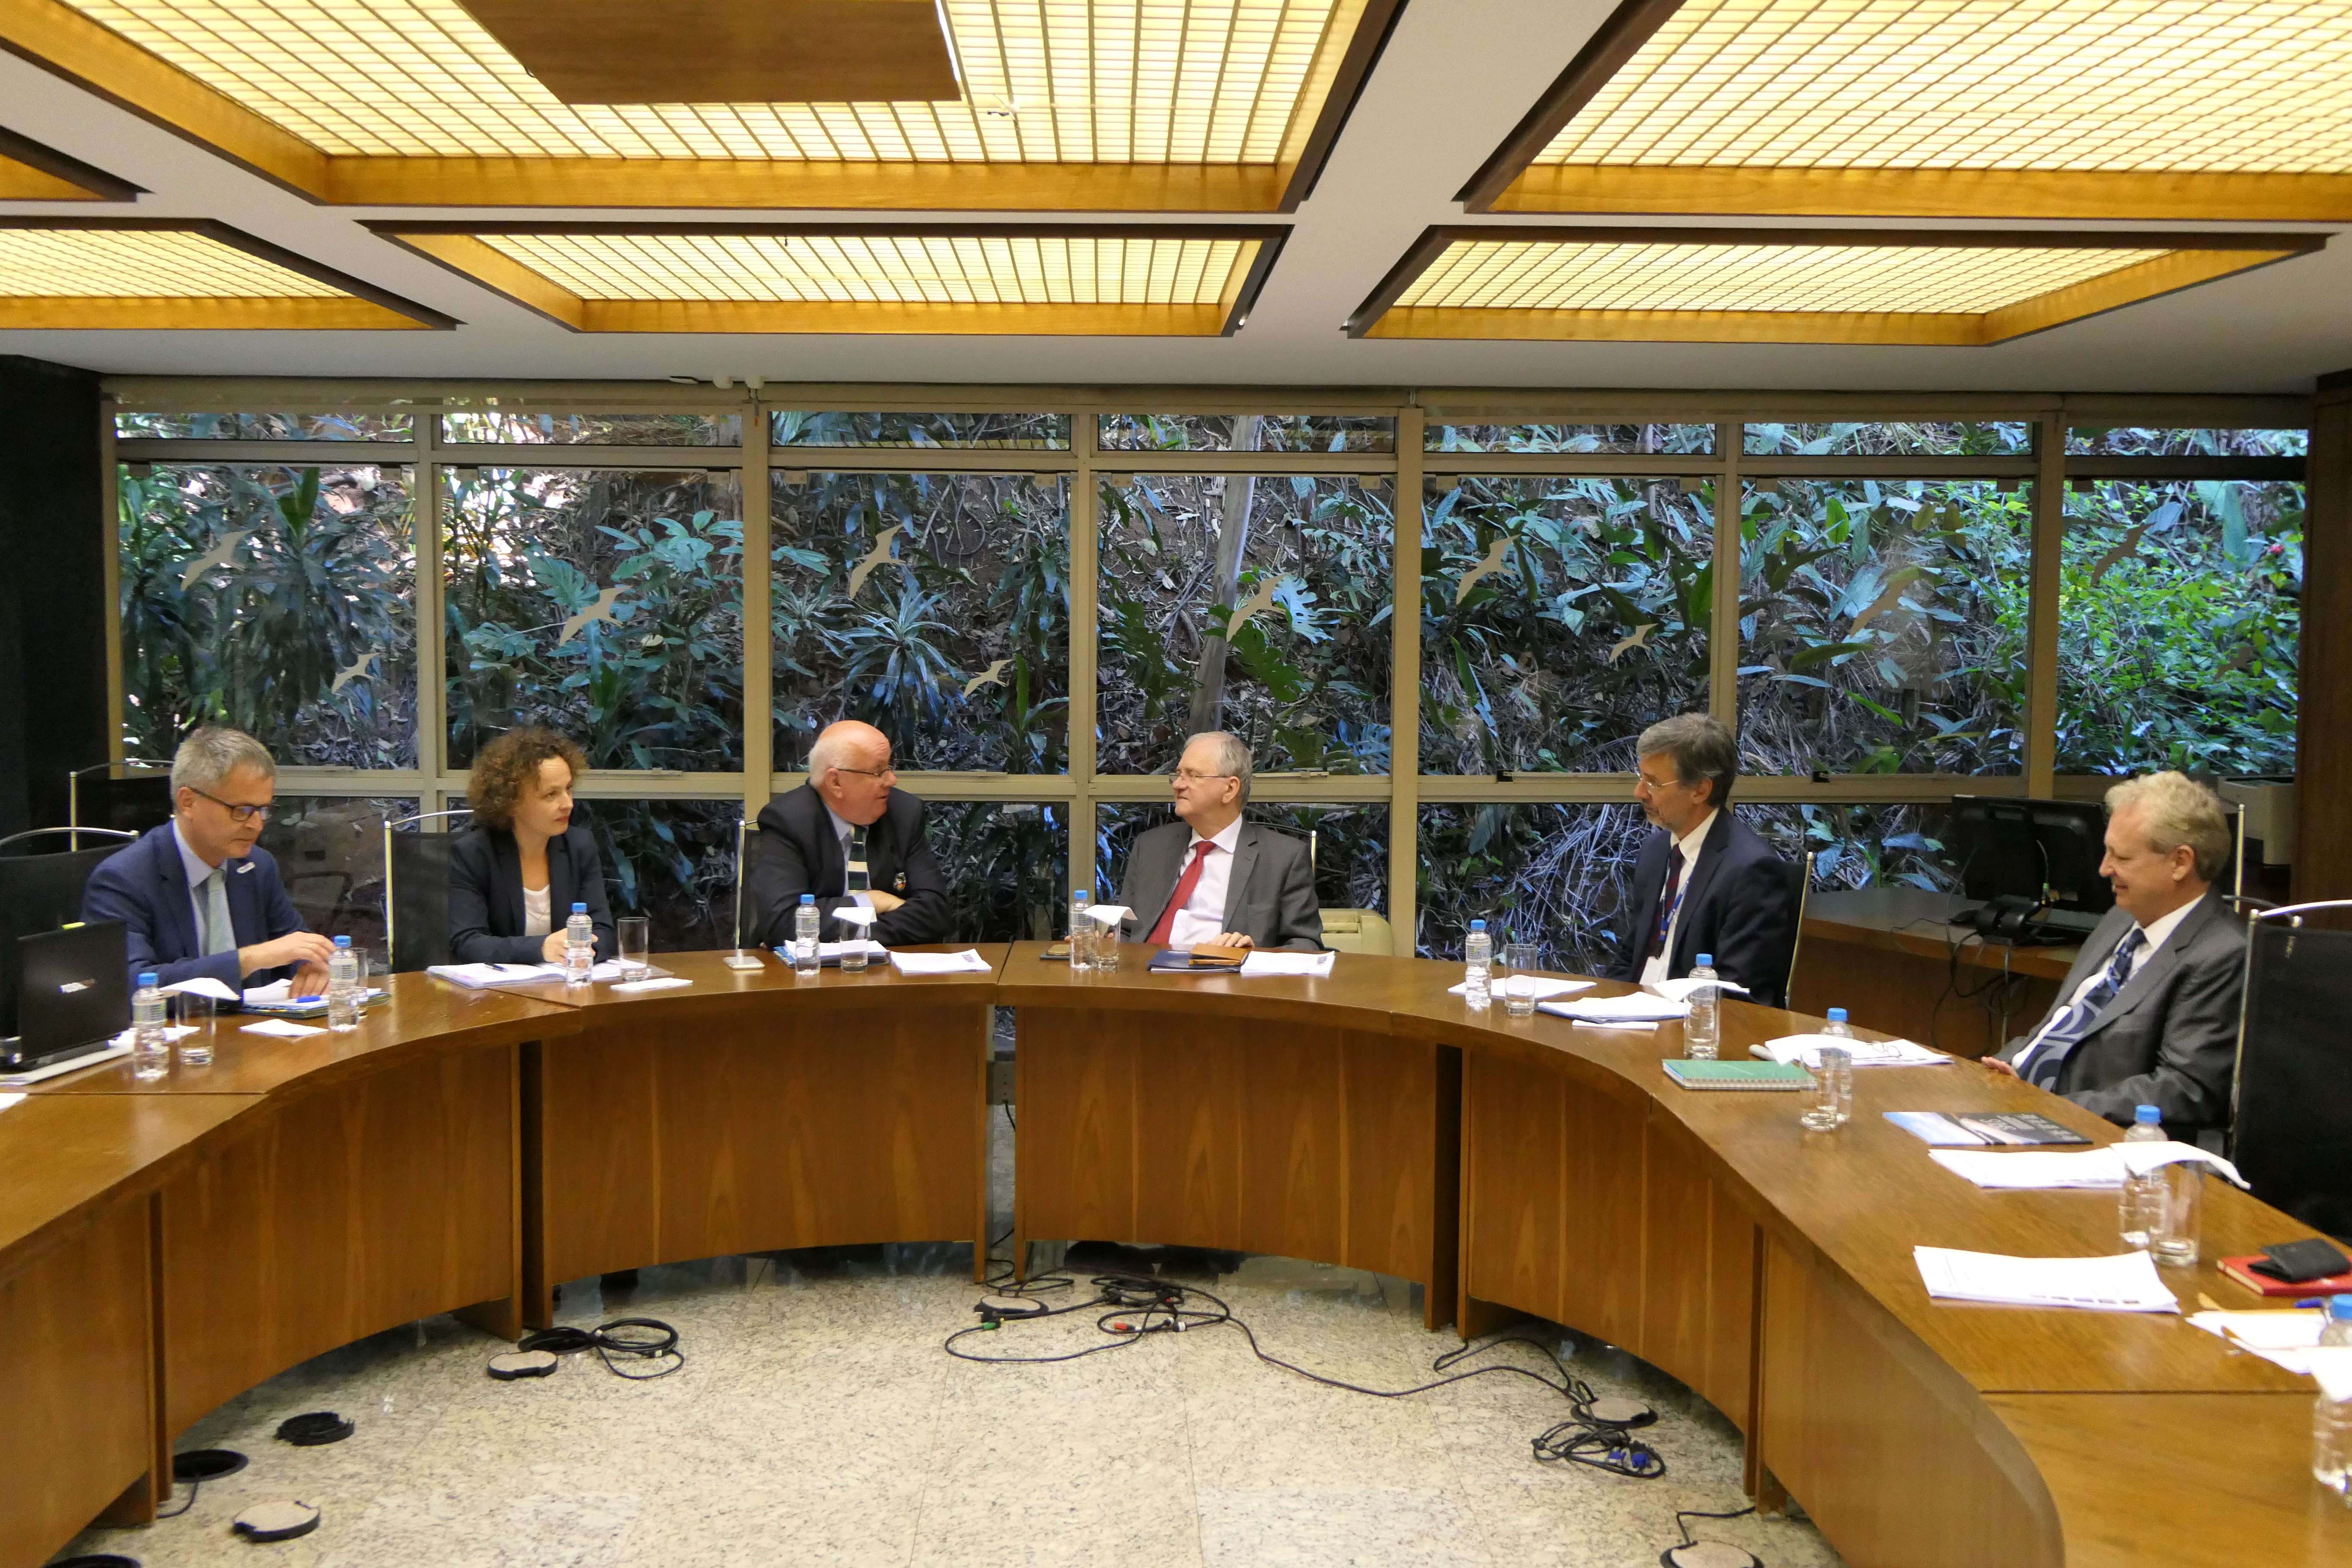 La DFG y la FAPESP se reúnen en São Paulo. En el medio, los presidentes Peter Strohscneider (DFG) y Marco Antônio Zago (FAPESP). A la izquierda, Dietrich Halm y Kathrin Winkler (DFG). A la derecha, Carlos Henrique de Brito Cruz y Euclides de Mesquita